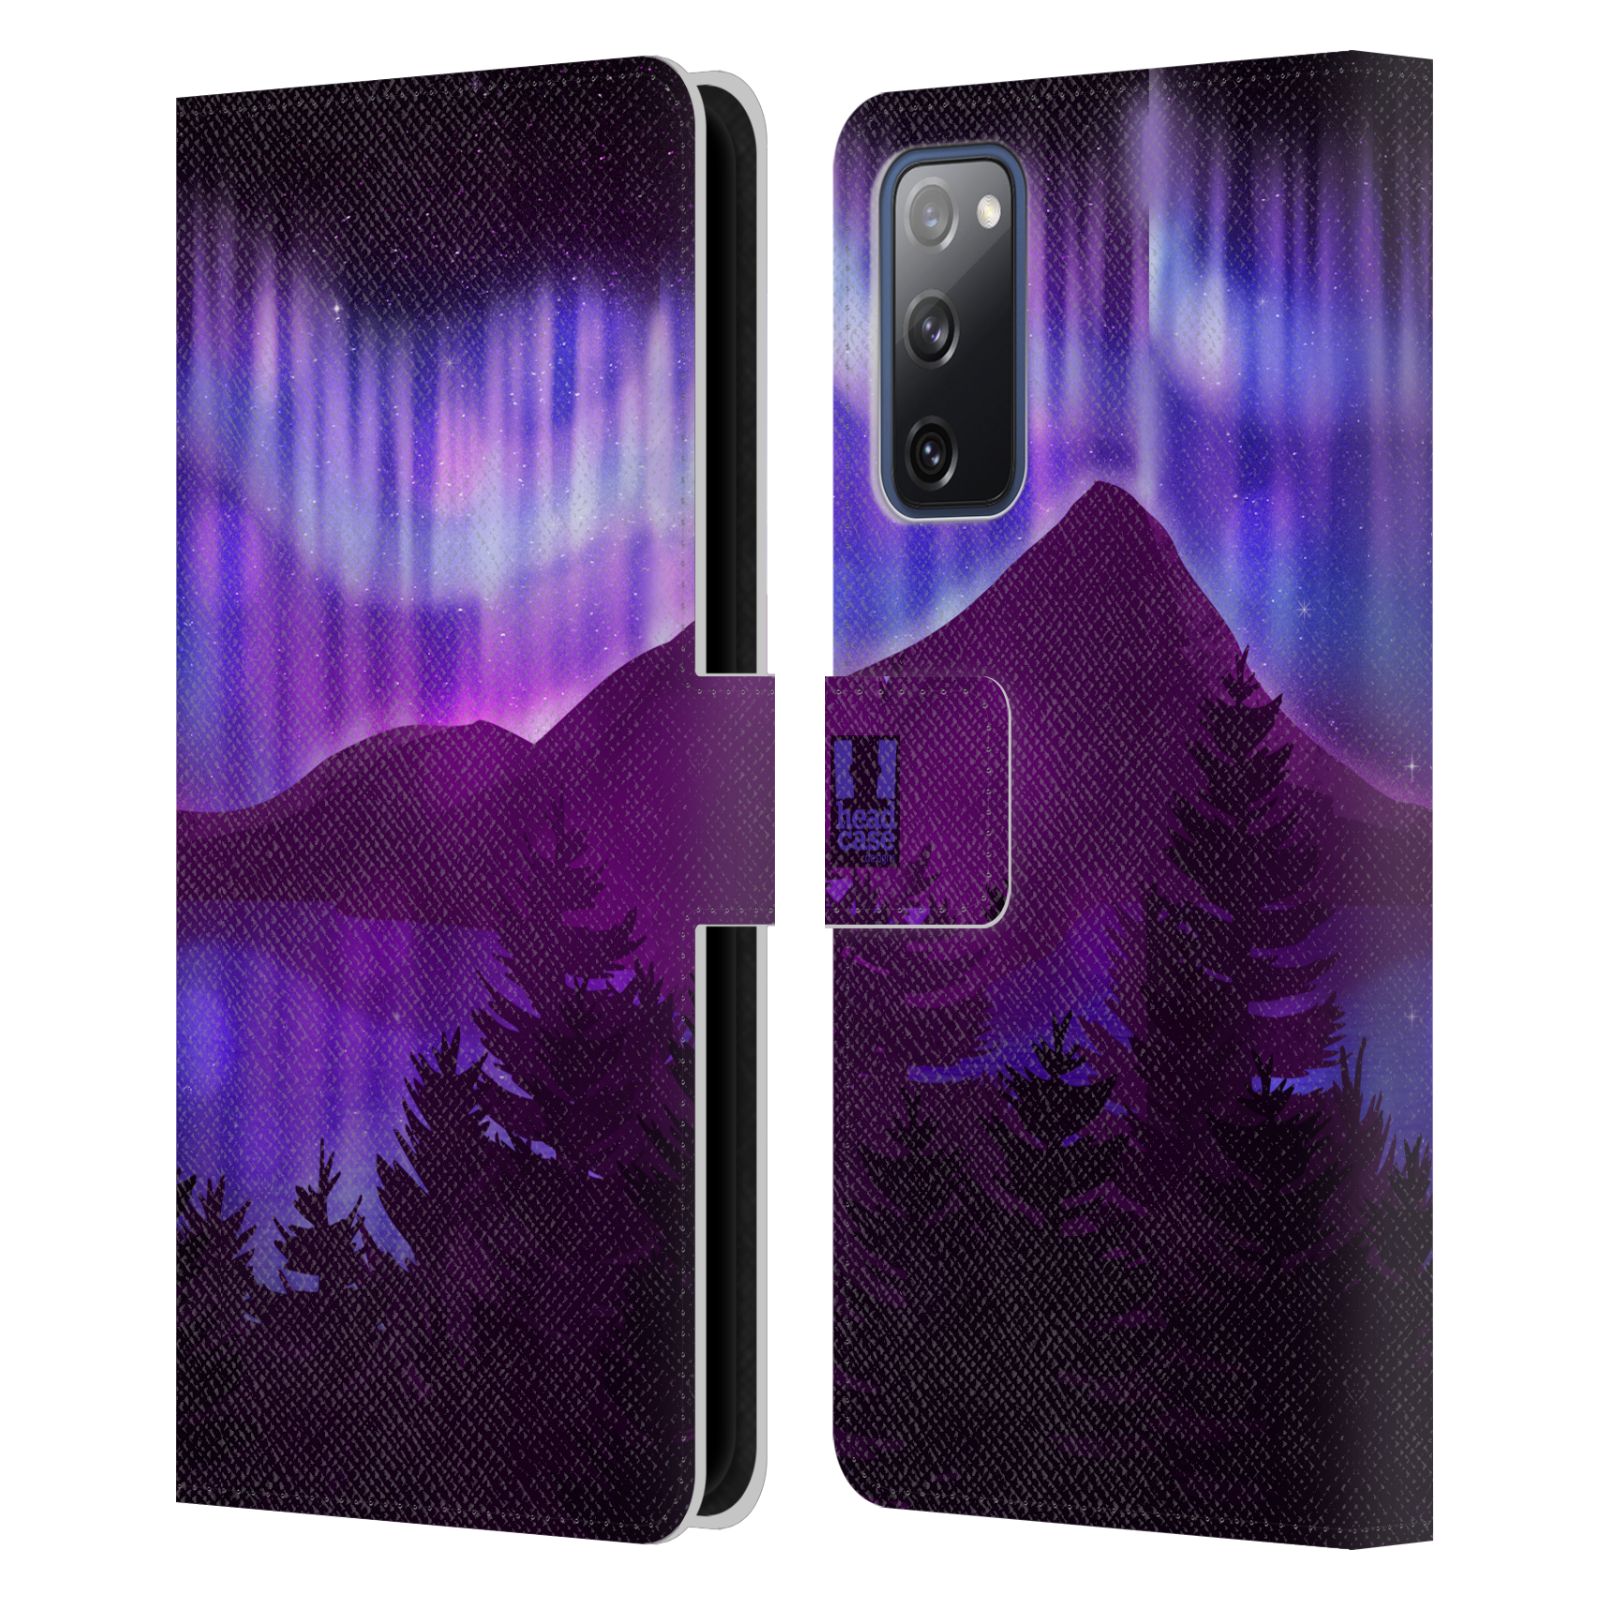 Pouzdro na mobil Samsung Galaxy S20 FE / S20 FE 5G  - HEAD CASE - Hory a lesy fialový odstín